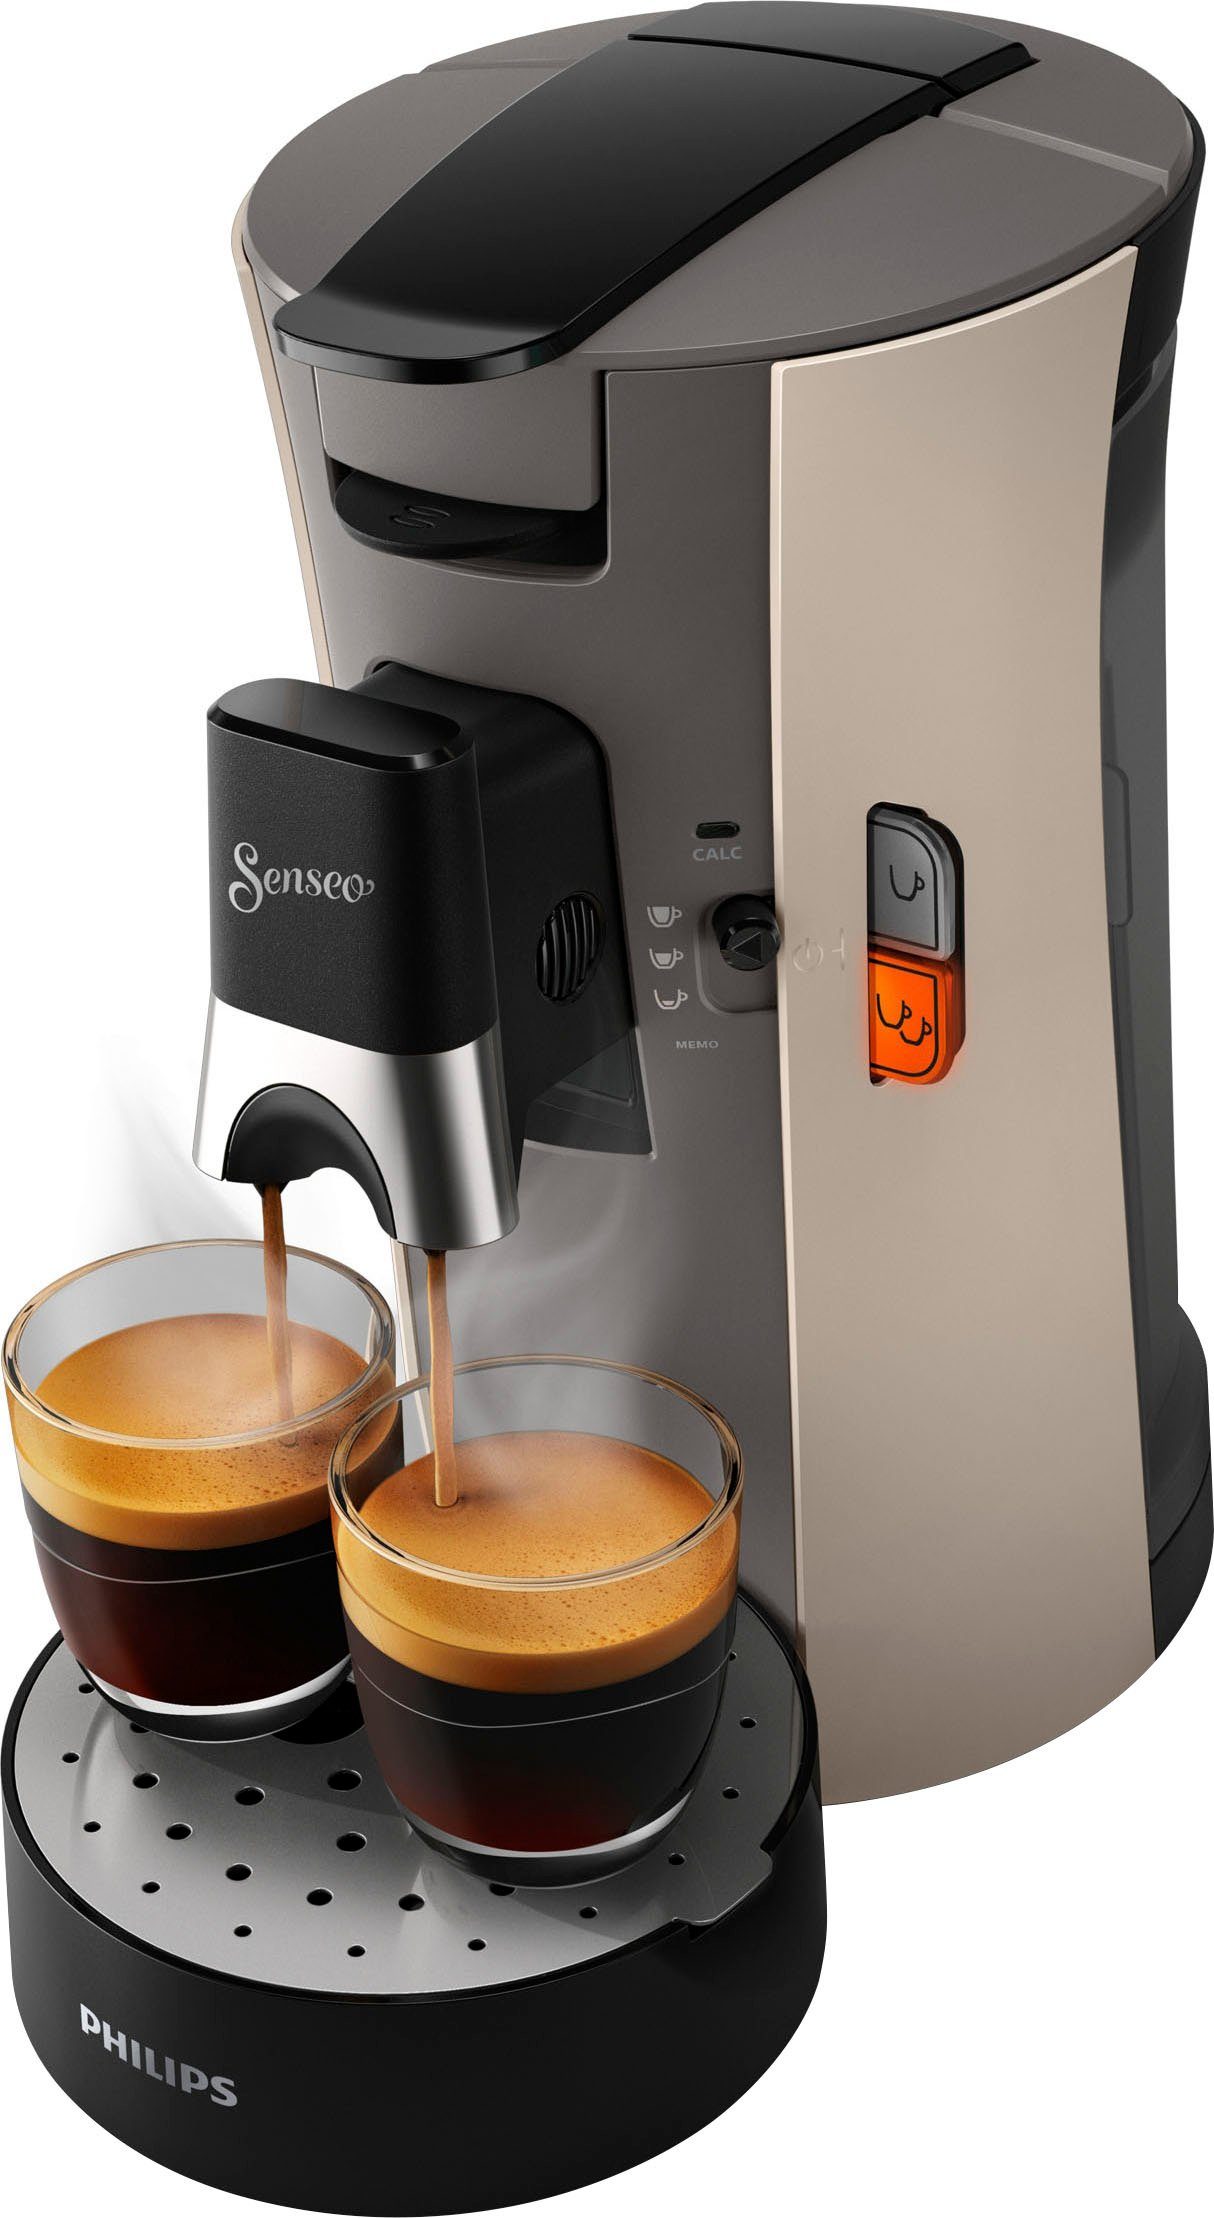 Philips Senseo Kaffeepadmaschine Select CSA240/30, inkl. Gratis-Zugaben im  Wert von € 14,- UVP